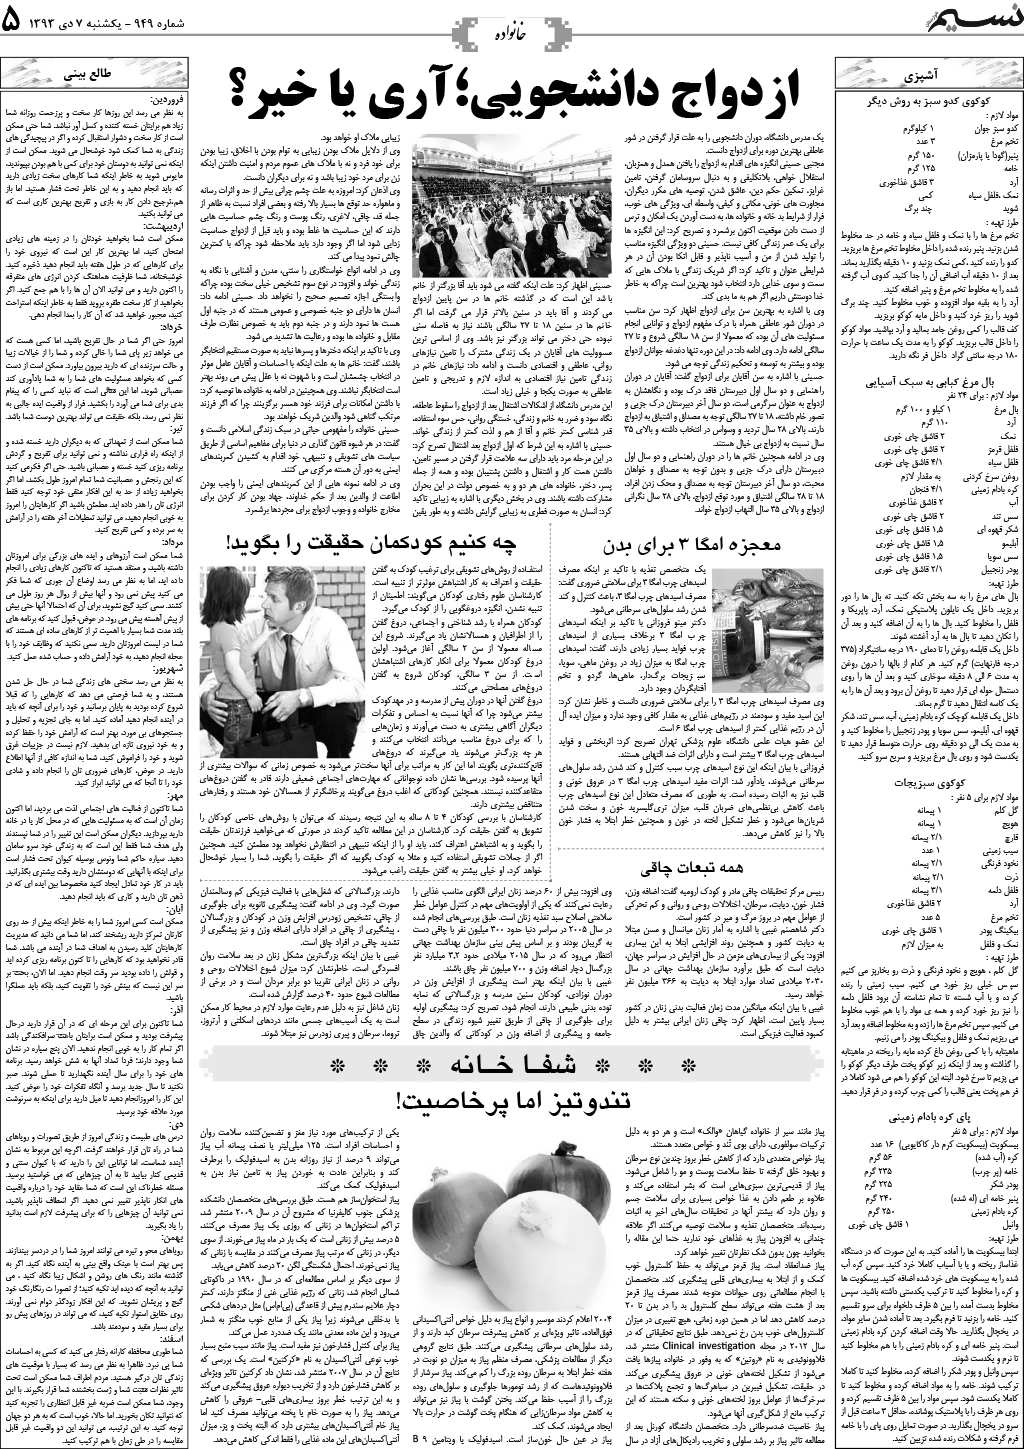 صفحه خانواده روزنامه نسیم شماره 949